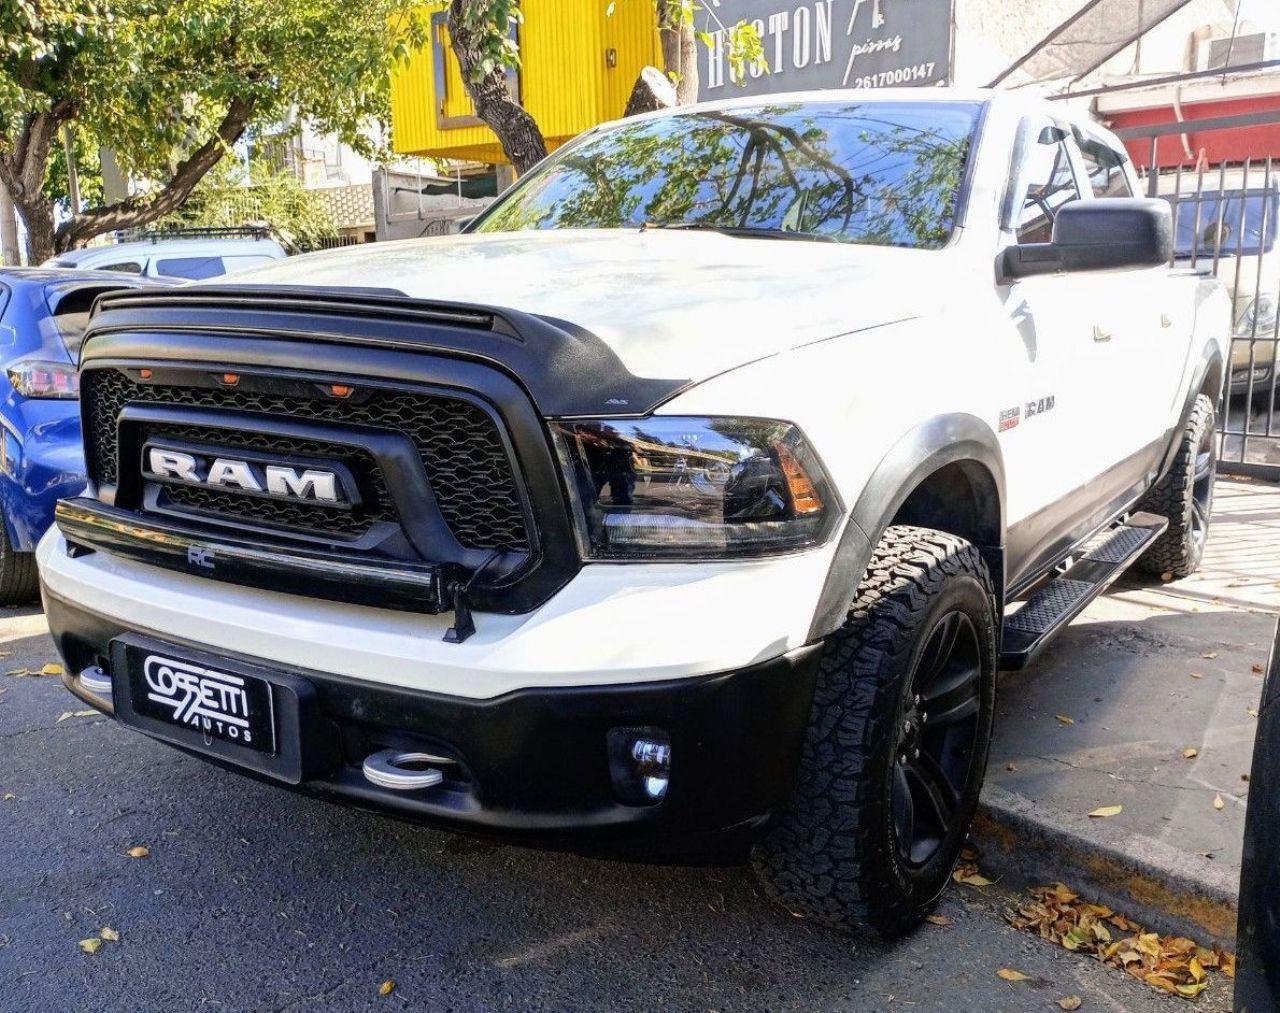 RAM 1500 Usada en Mendoza, deRuedas